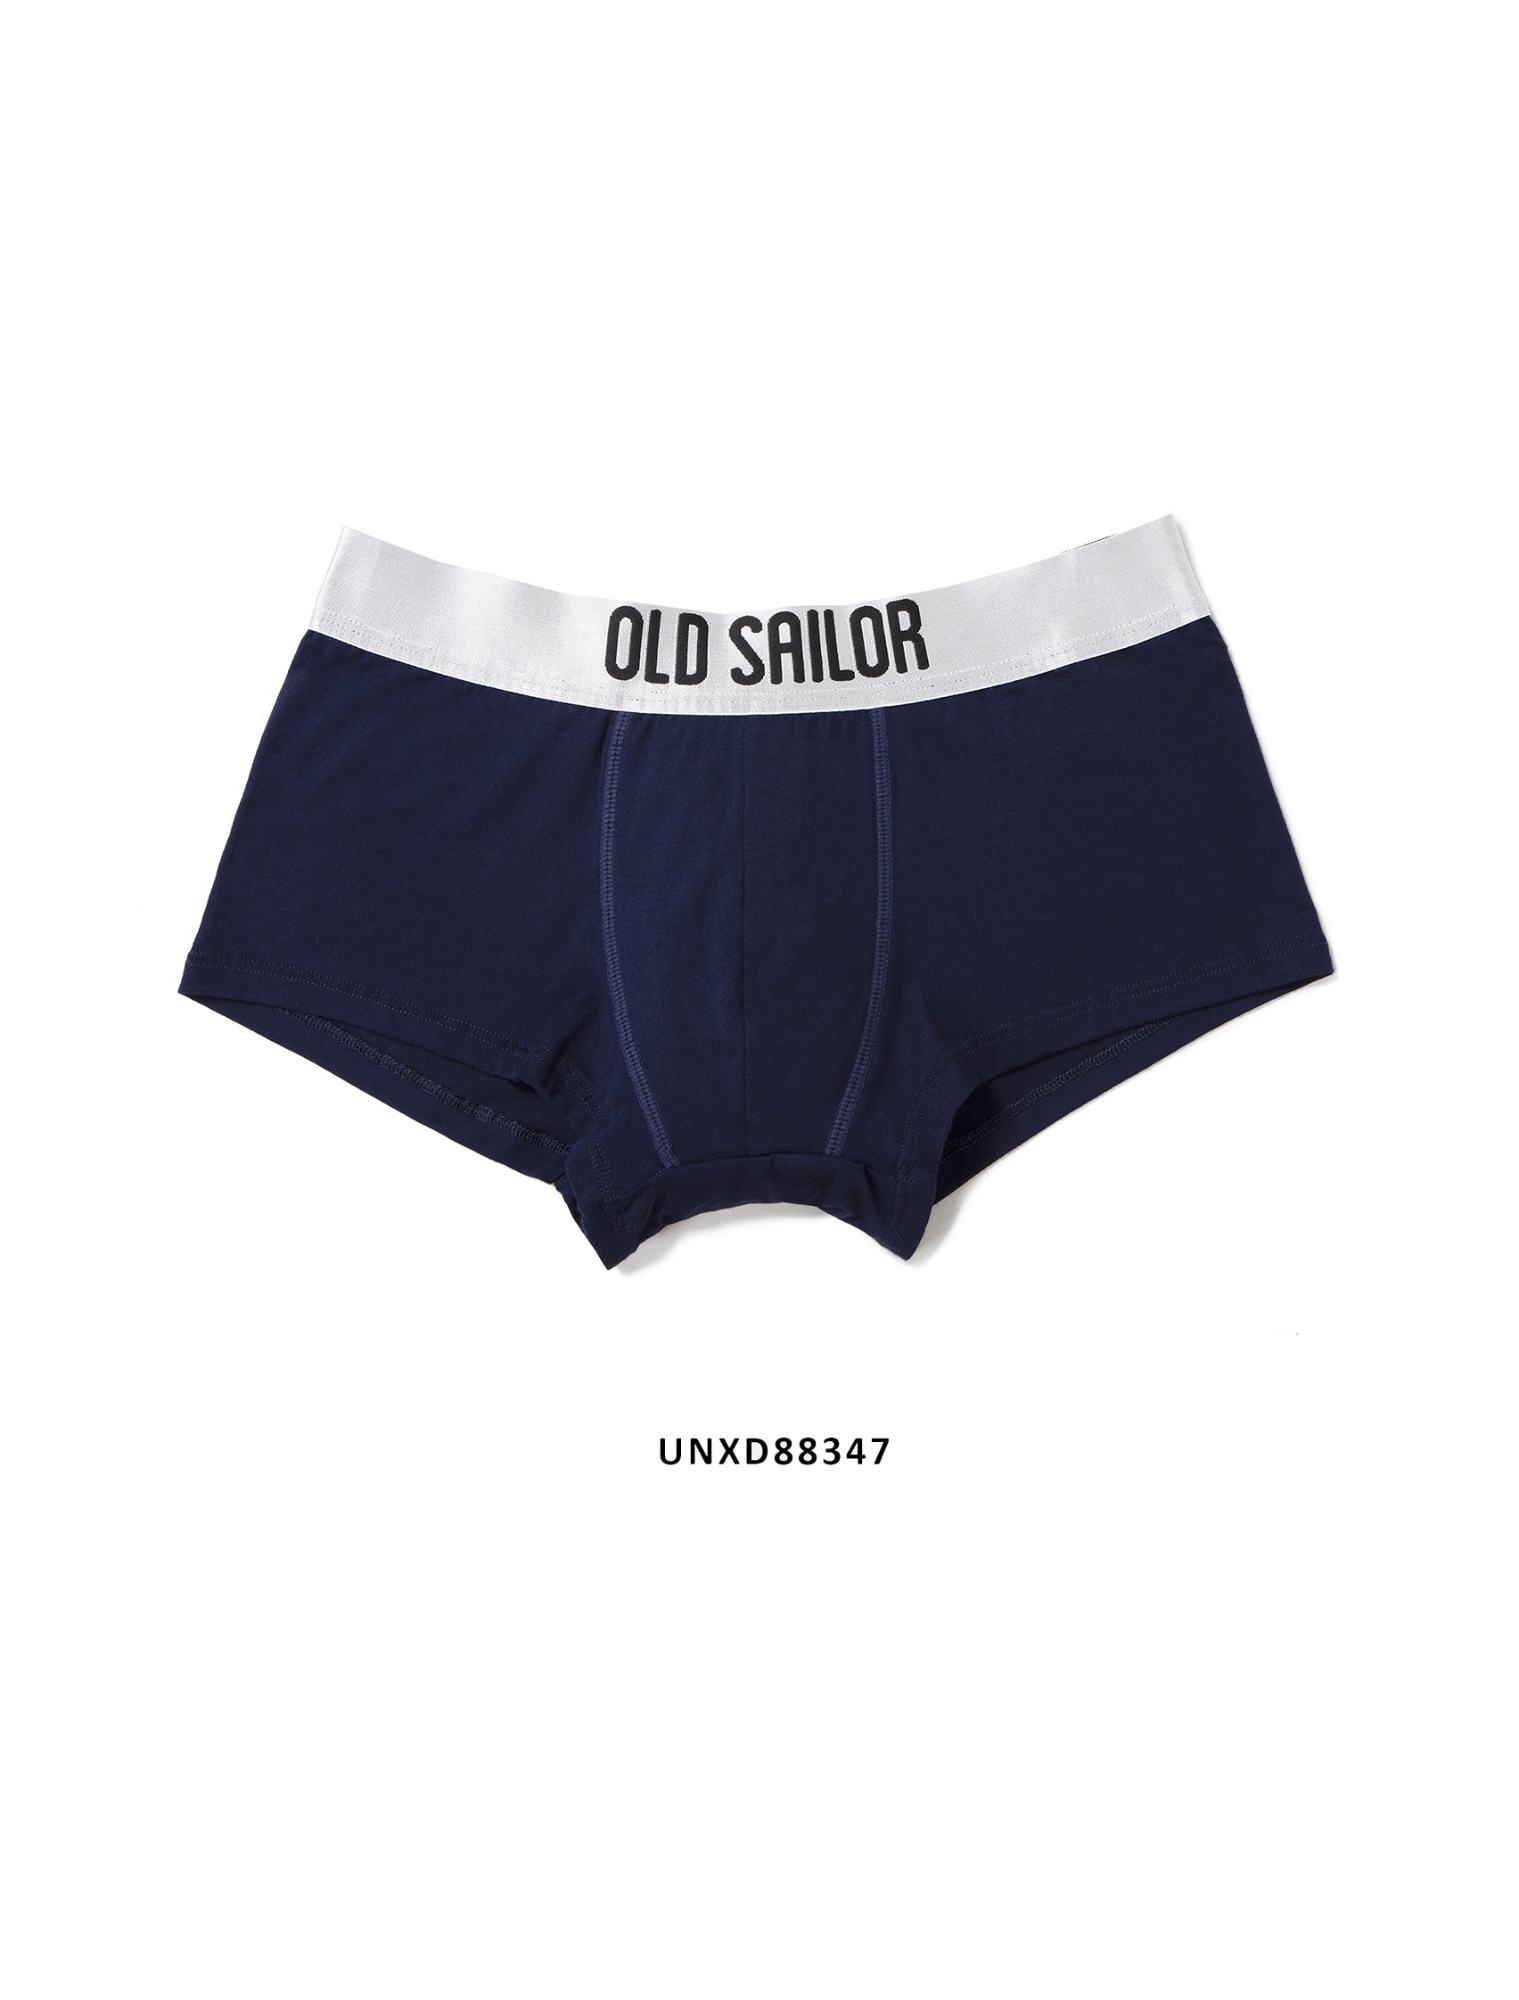 Quần Boxer Old Sailor - O.S.L BOXER - NAVY UNXD883471 - xanh đen - big size upto 5XL